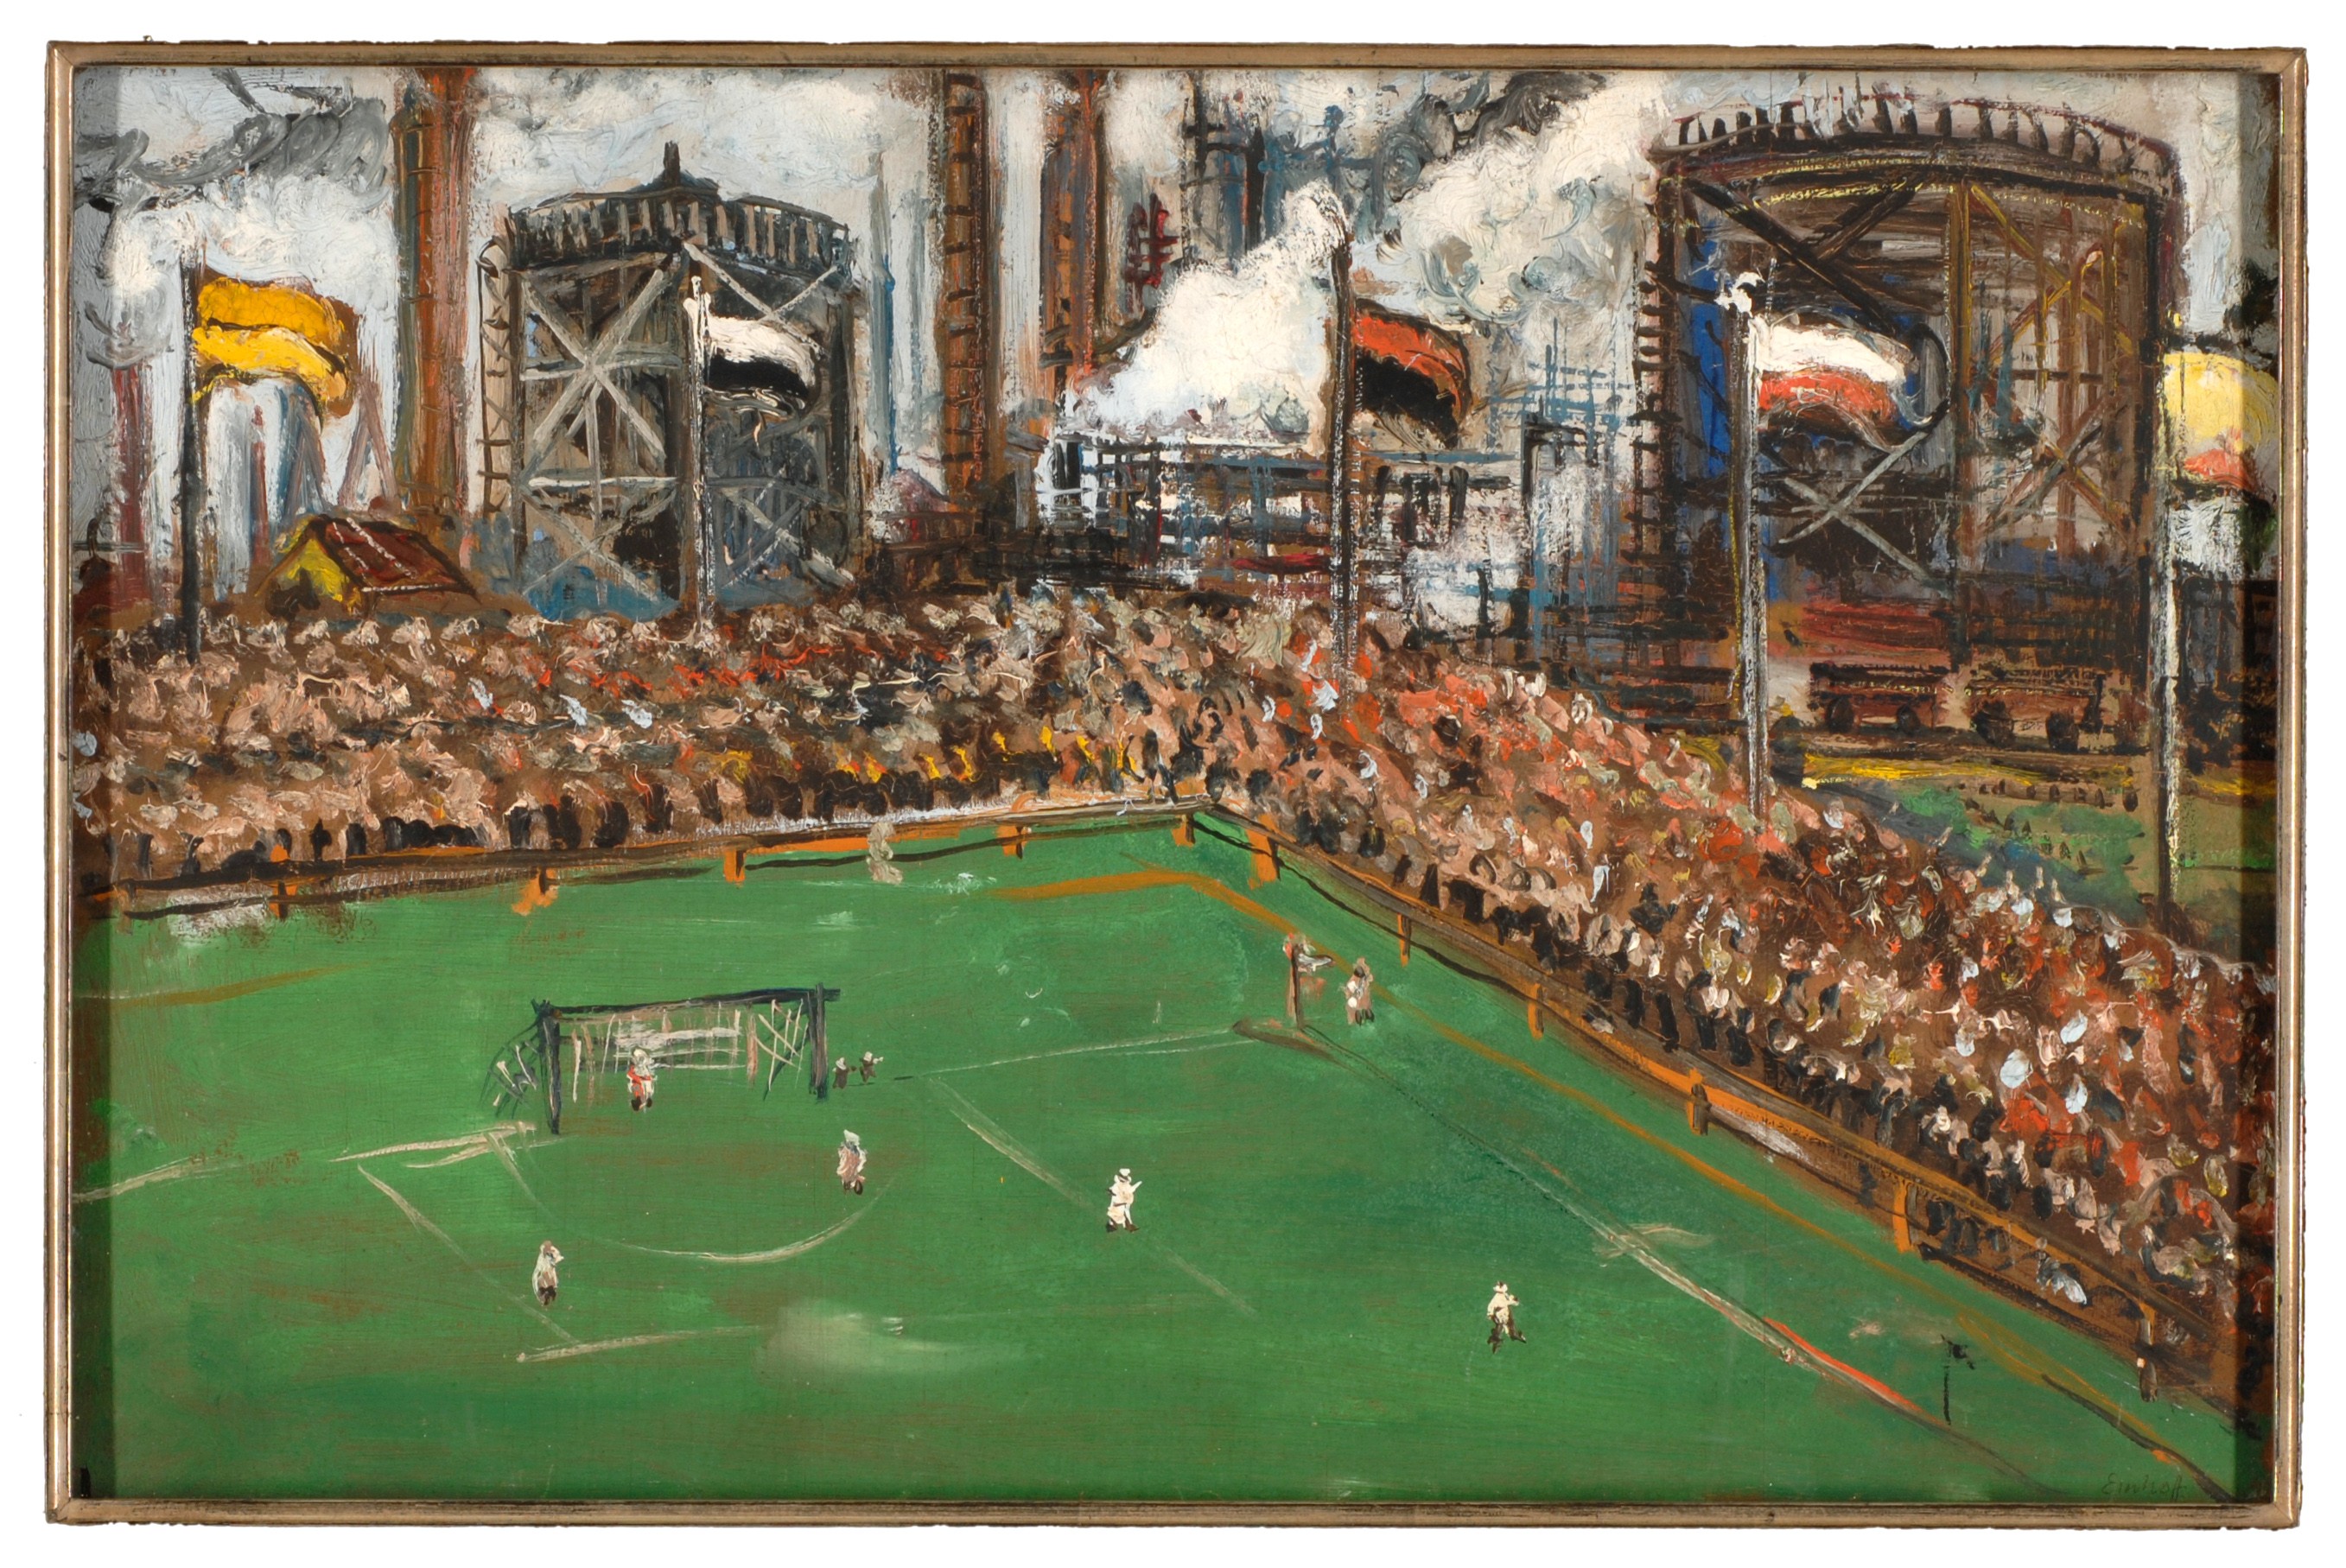 Gerahmtes Ölbild zeigt den Blick auf einen Fußballplatz mit Zuschauerrängen vor einer Industriekulisse